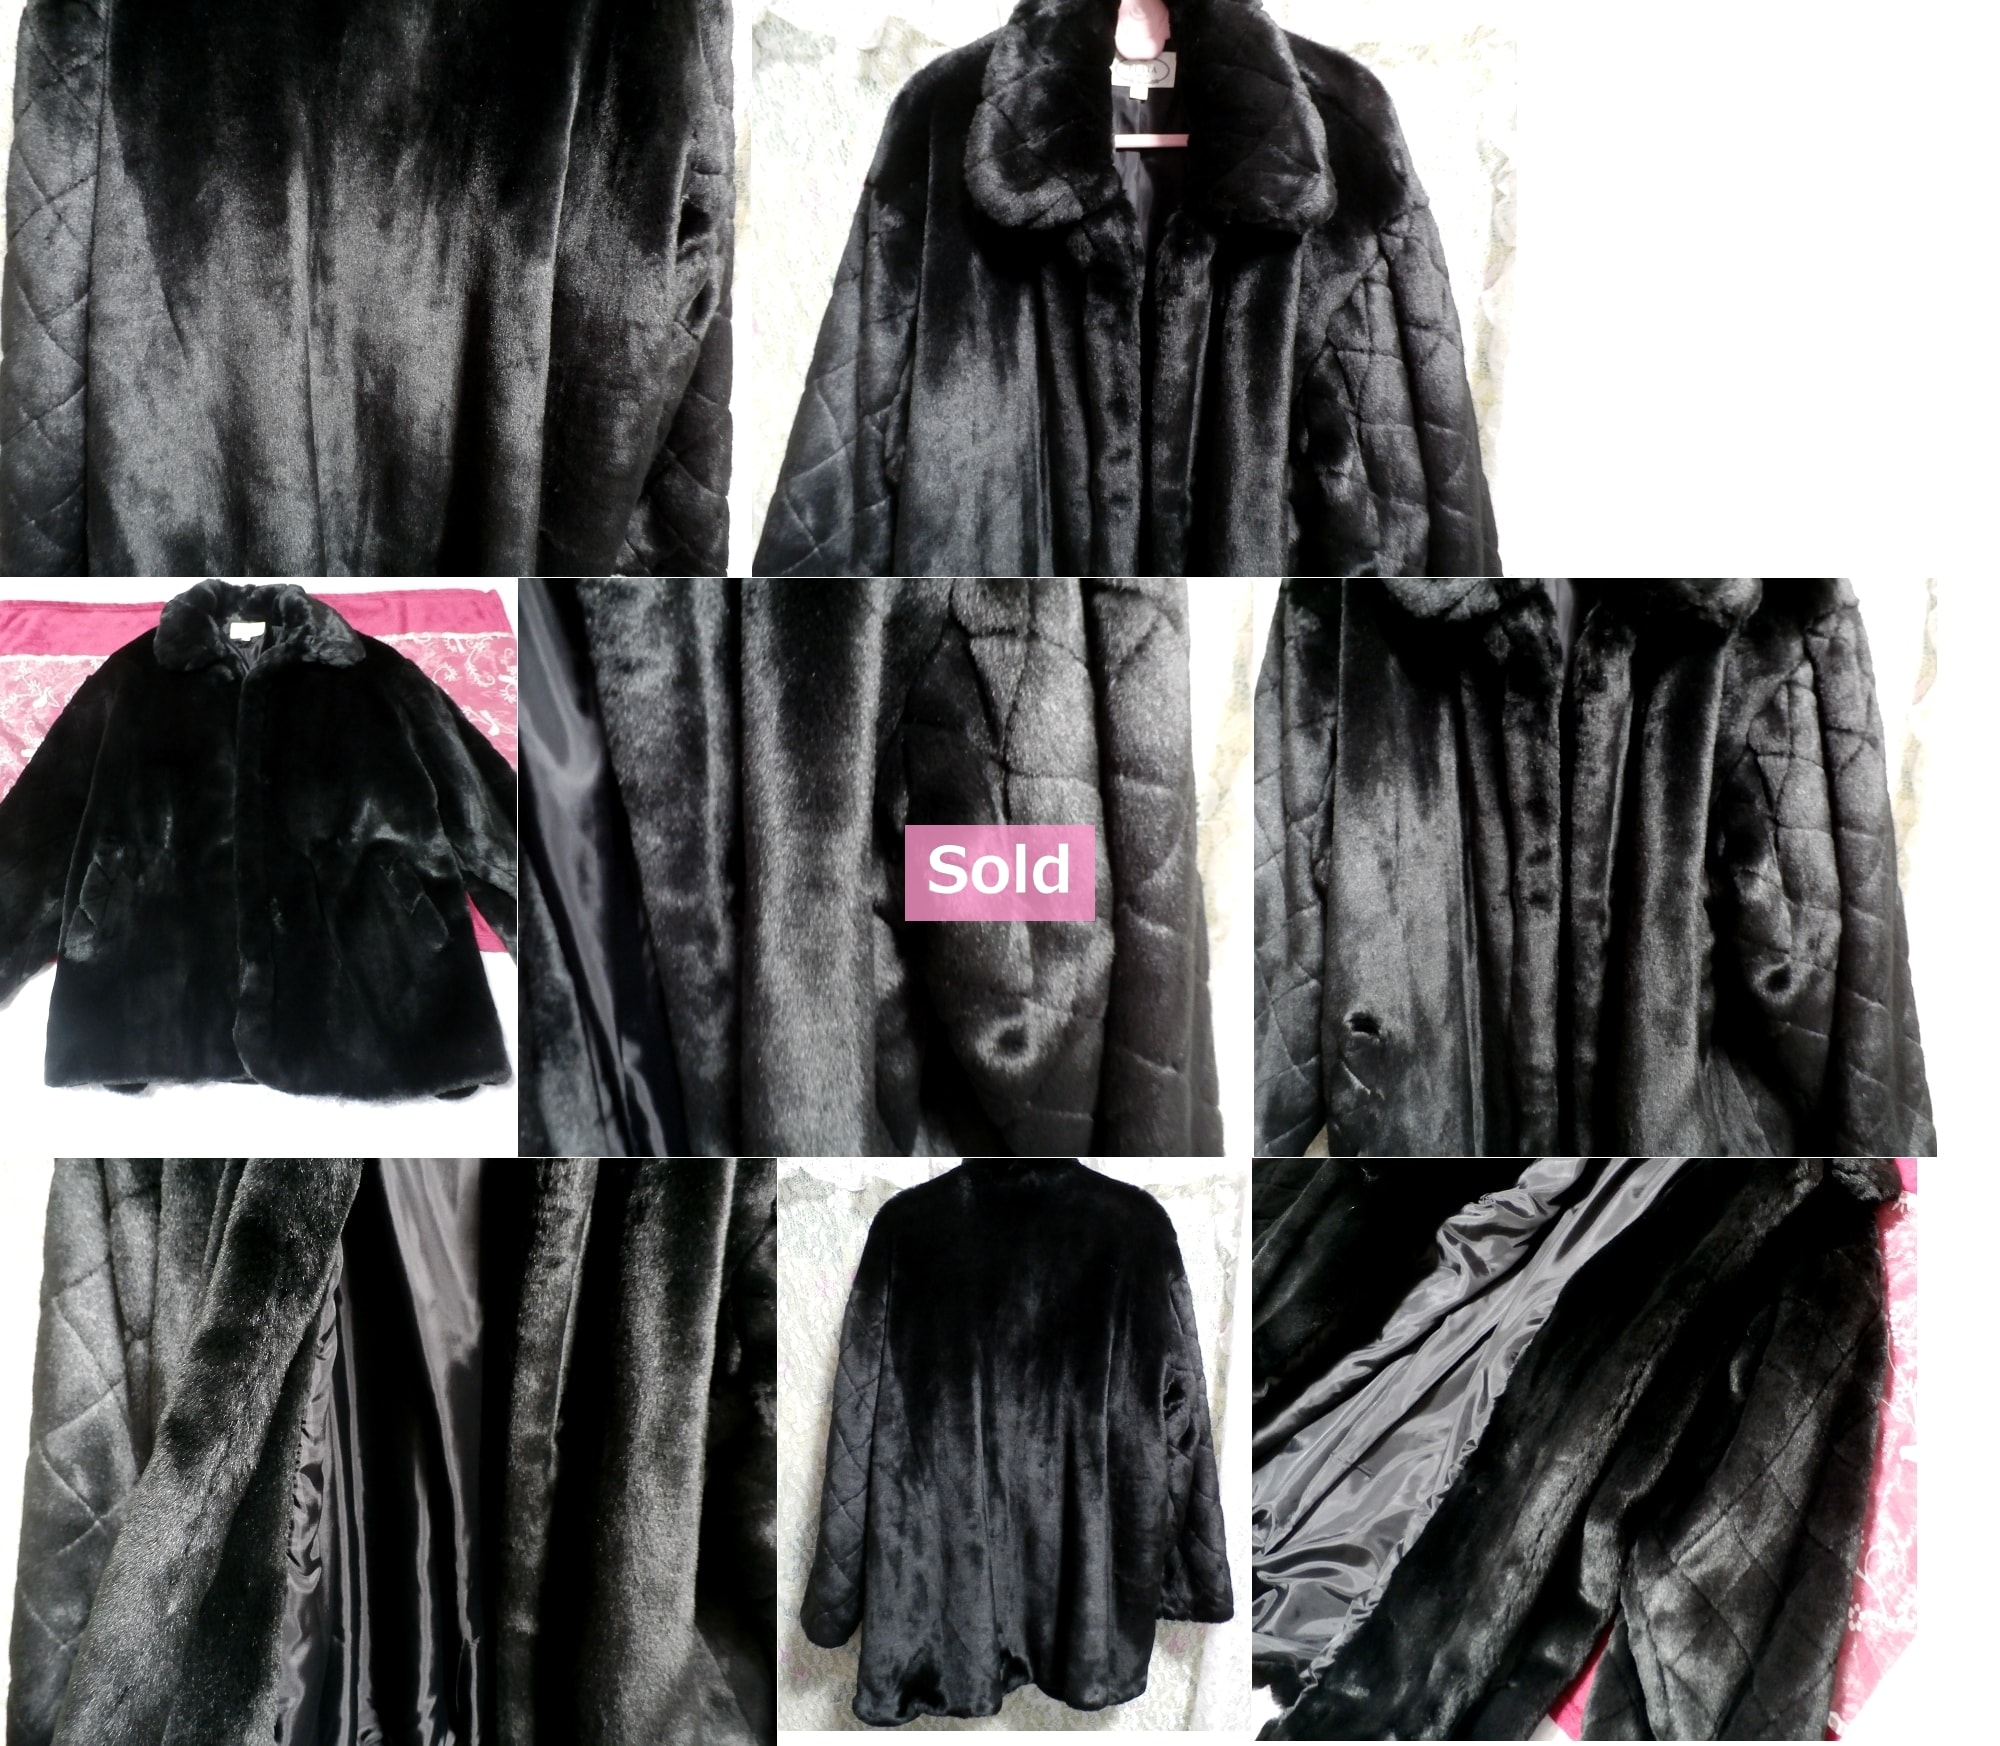 Black beautiful fur coat / cloak Black beautiful fur coat